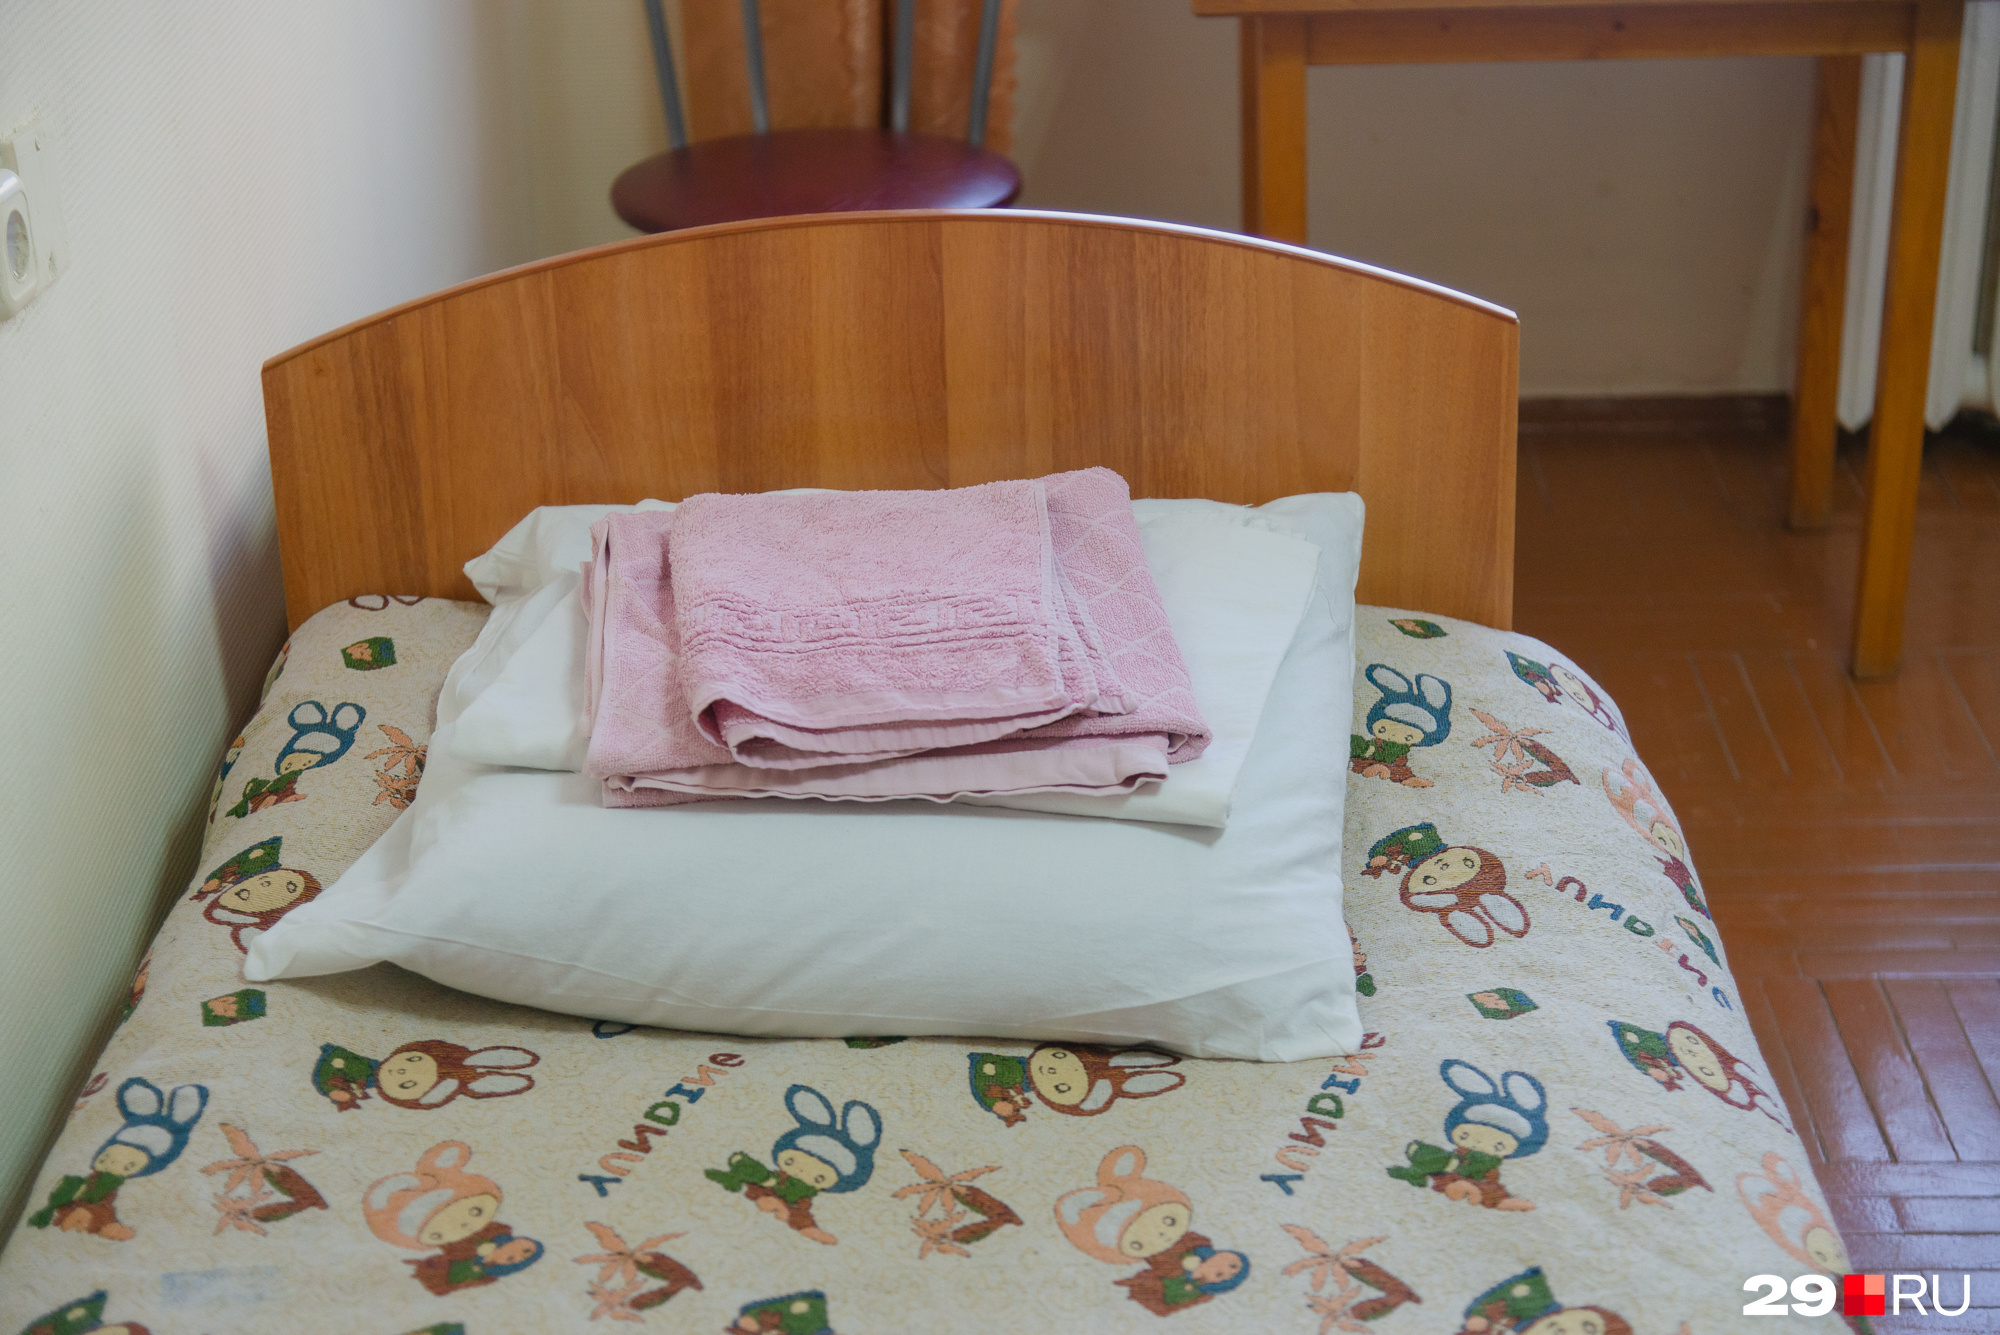 Беженцам предоставляют средства гигиены: постельное белье, полотенца, личные принадлежности